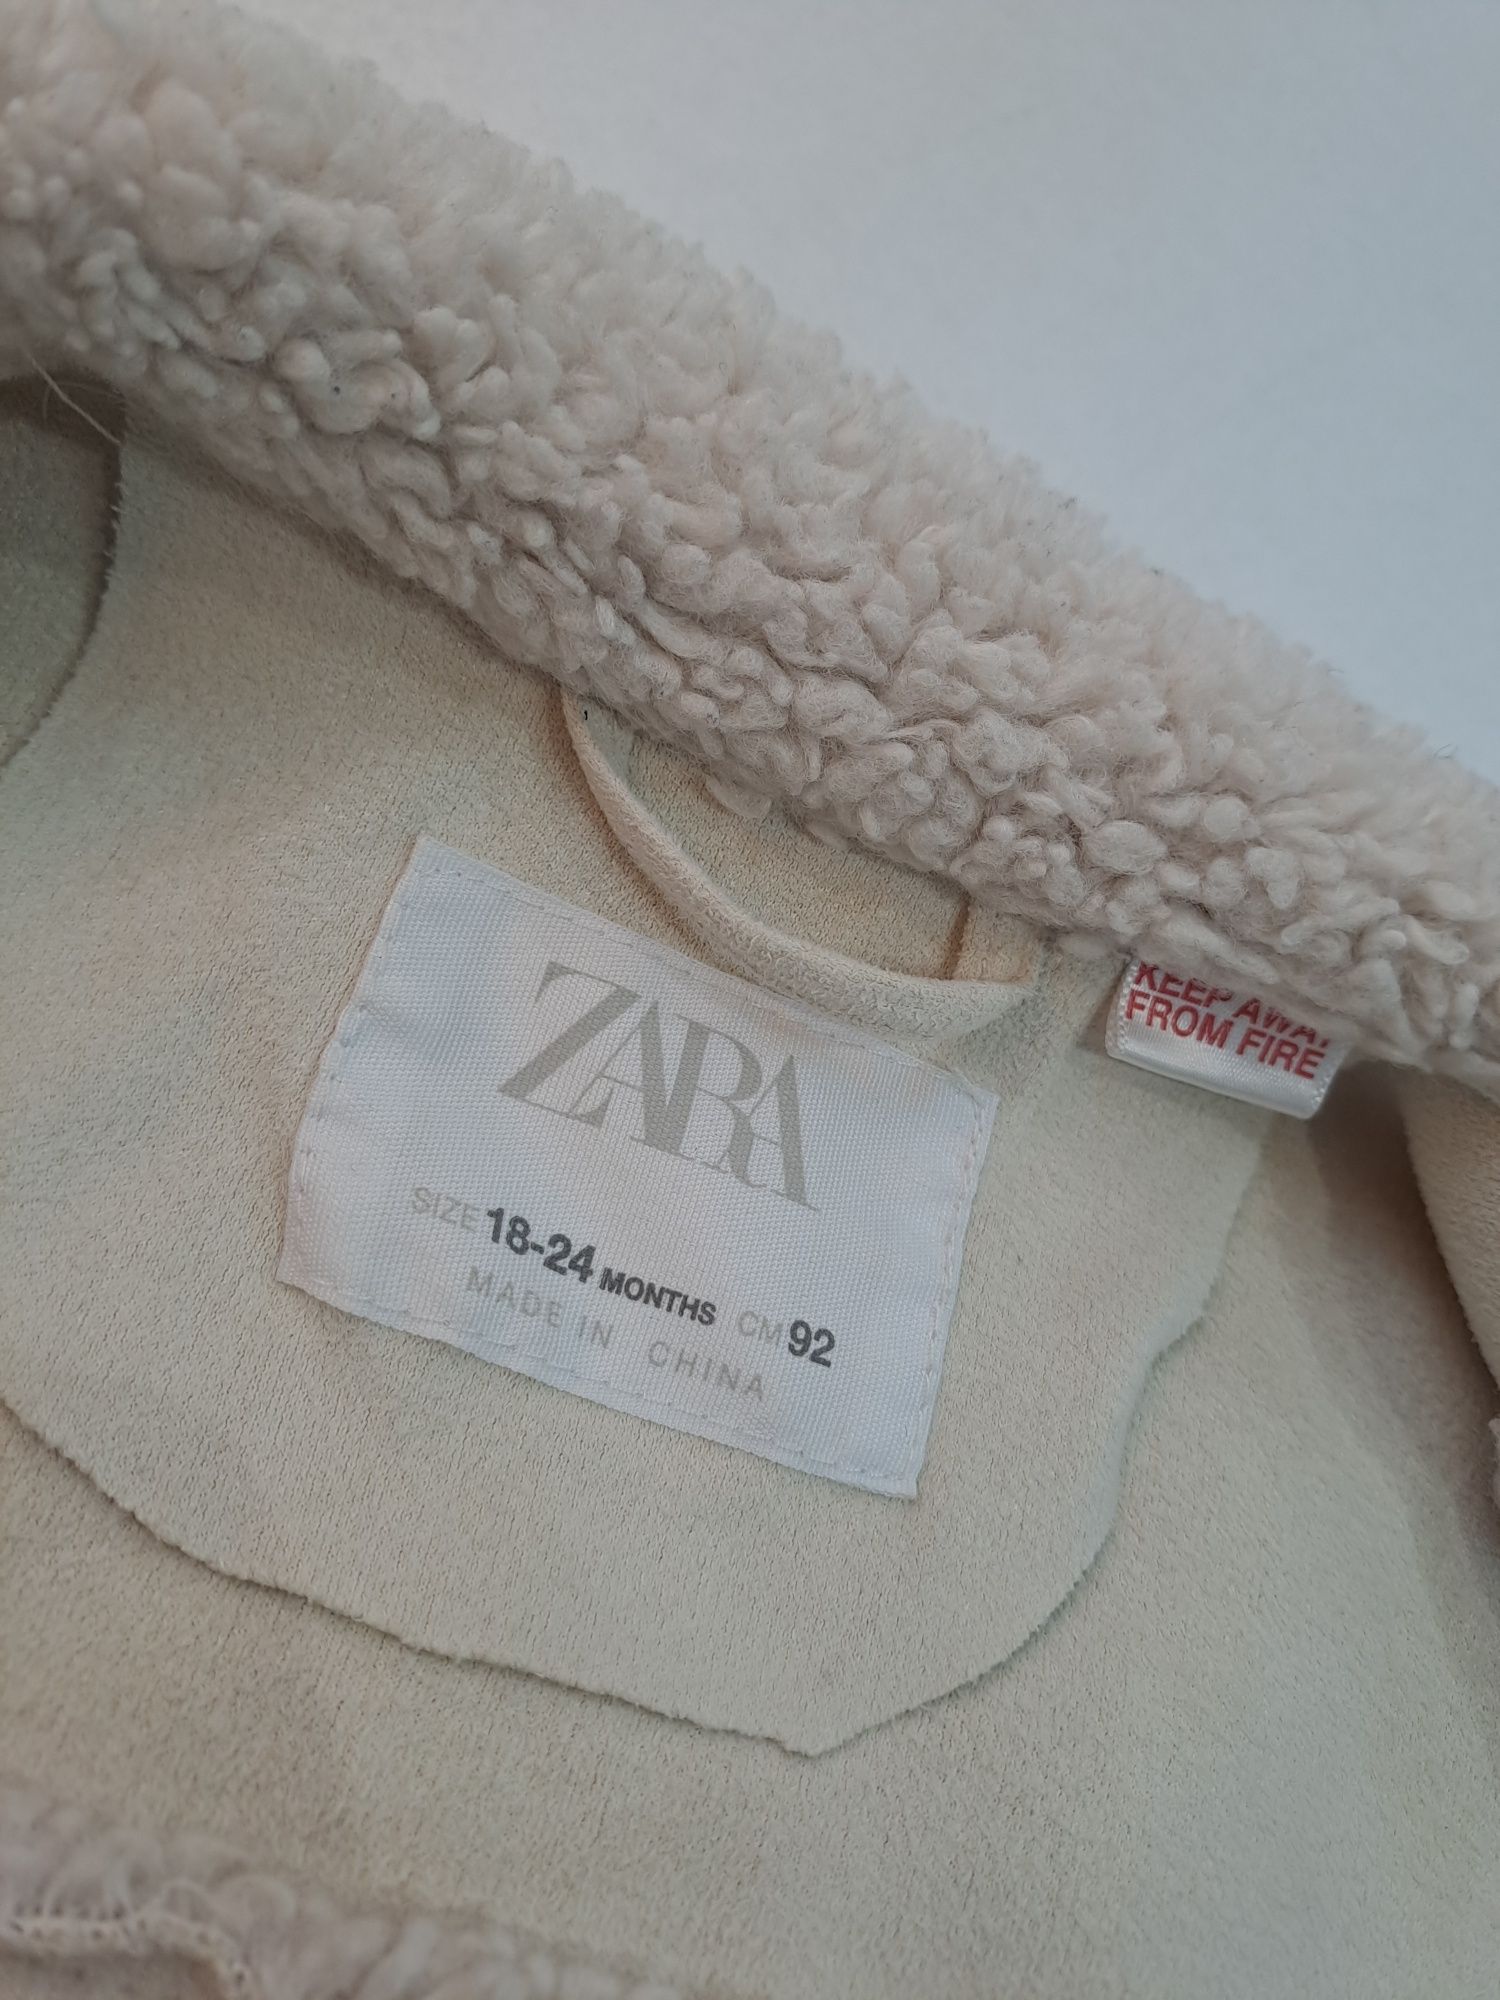 Рубашка Zara на 18 - 24 міс. Шерпа